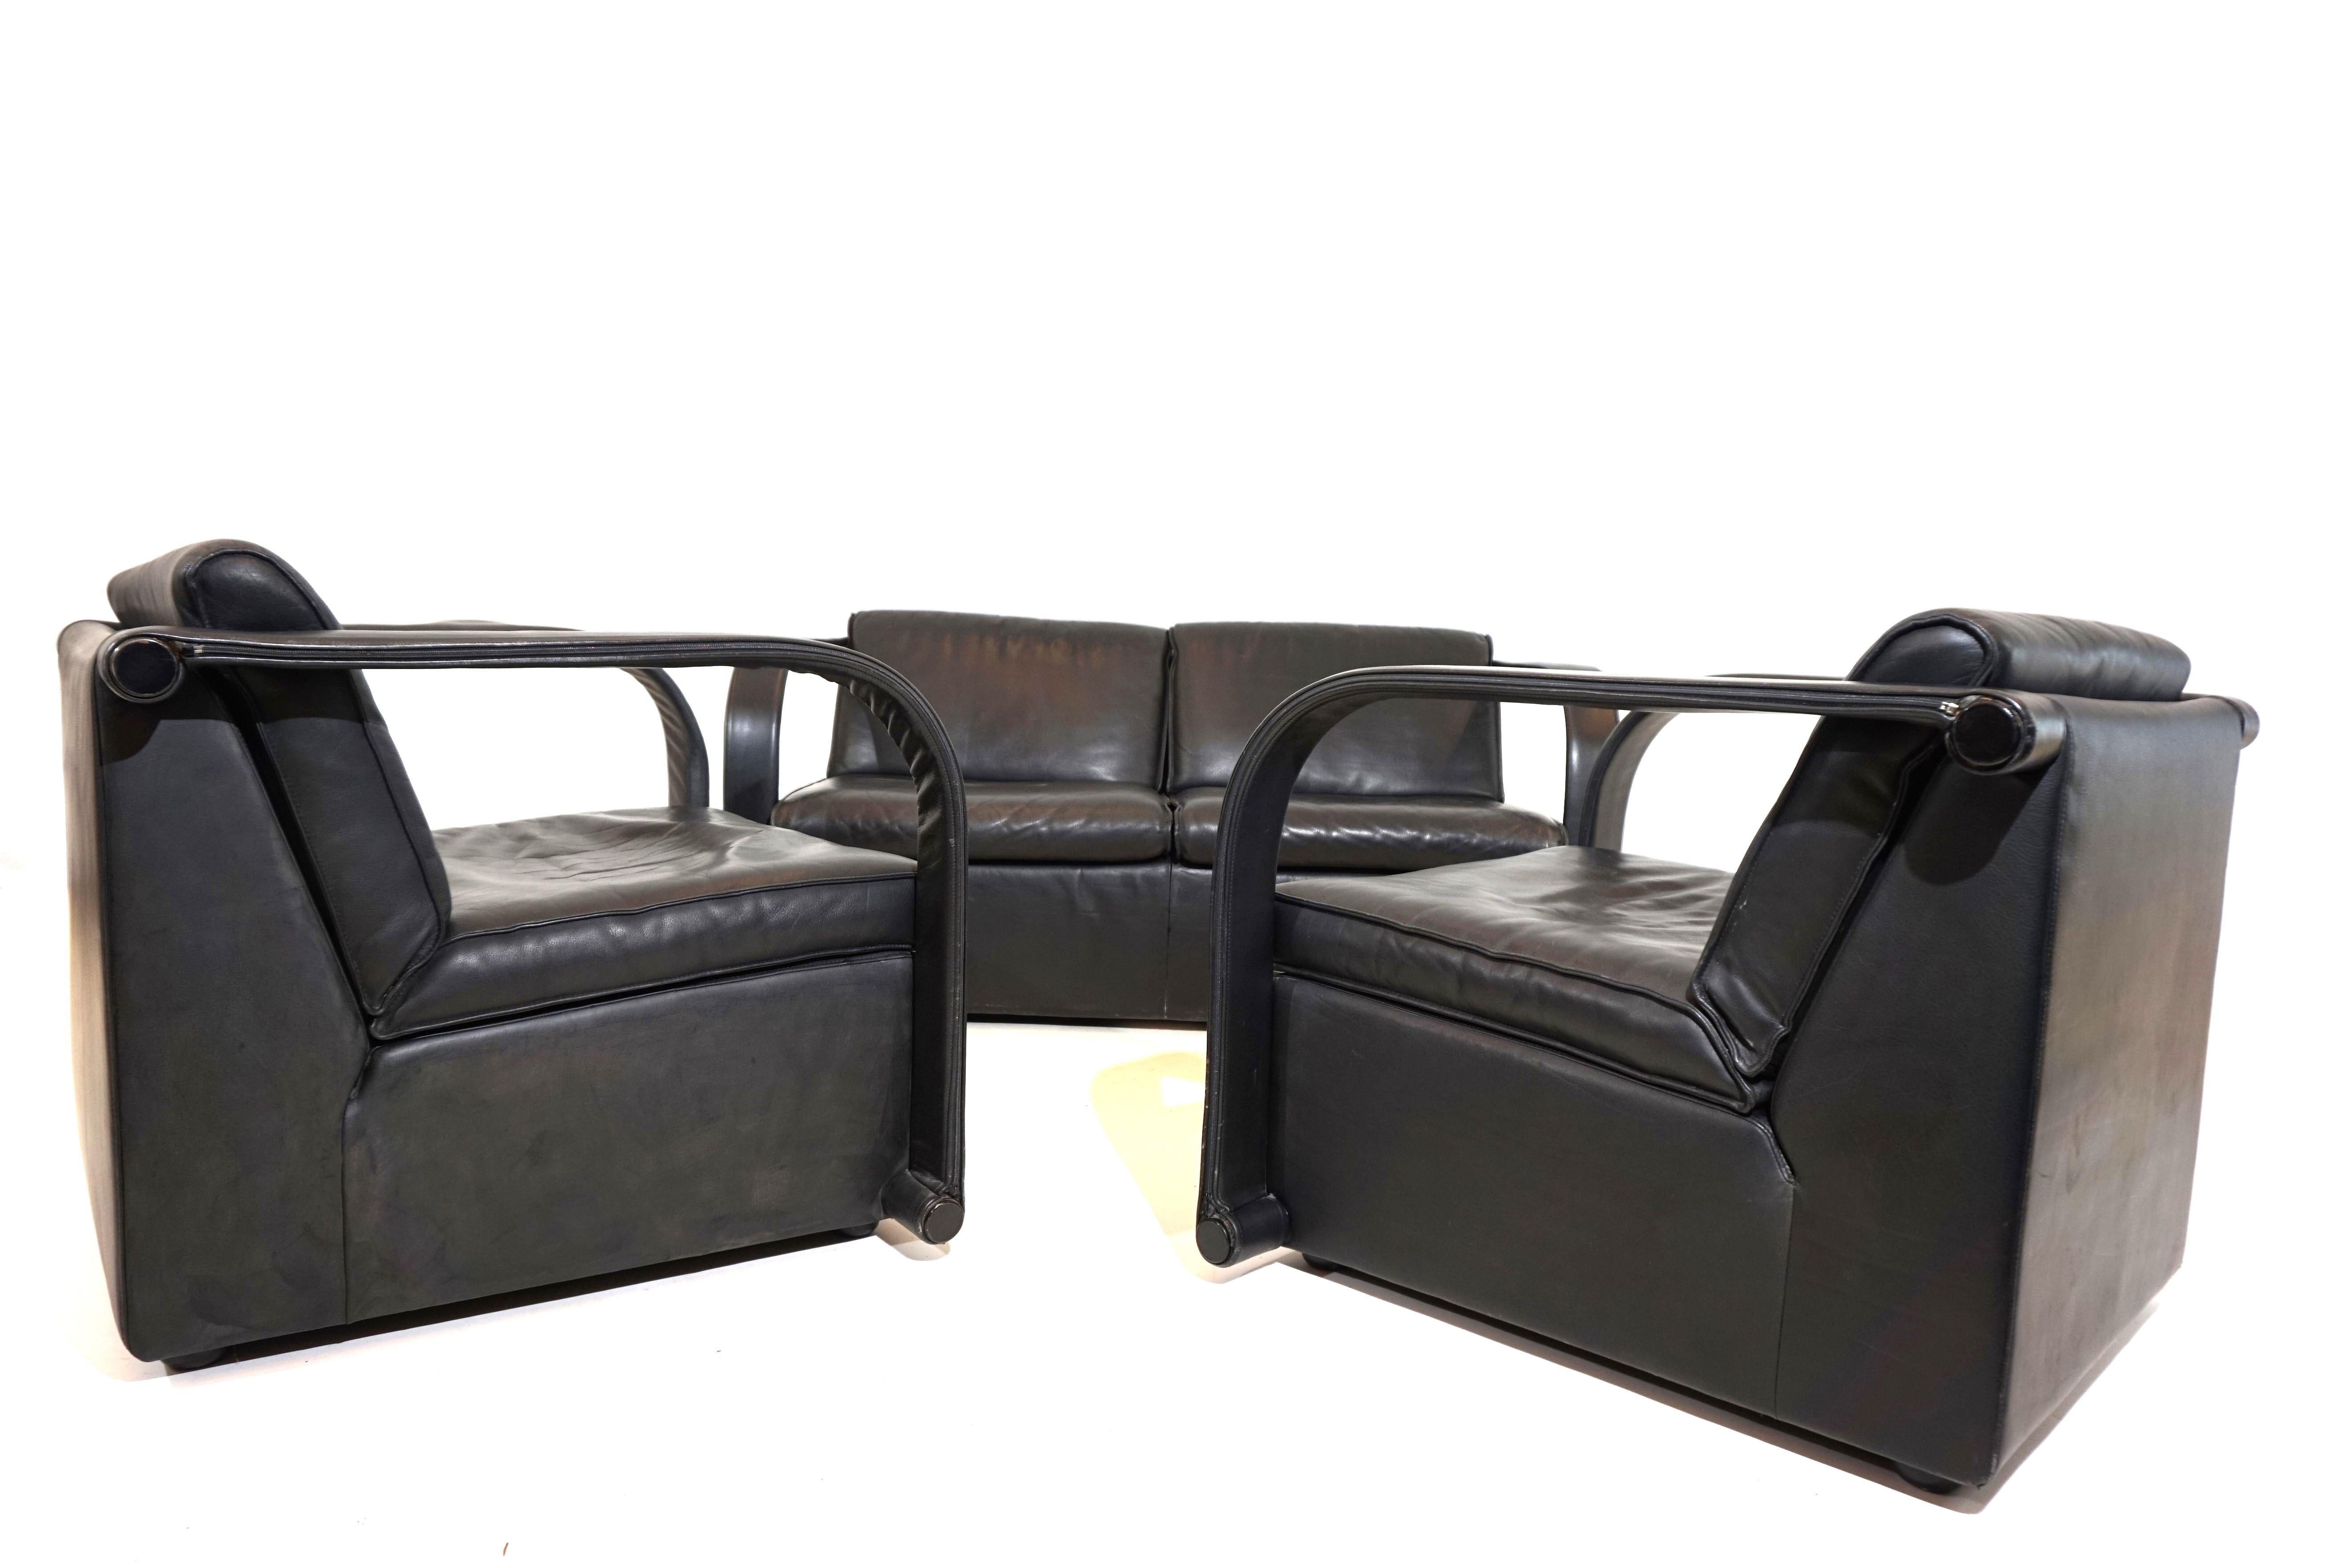 Cet ensemble en cuir Arconas se compose d'un canapé 2 places et de deux fauteuils. Le cuir noir épais est en très bon état avec des signes d'usure minimes. Les coussins du dossier et de l'assise, ainsi que les revêtements en cuir des accoudoirs,